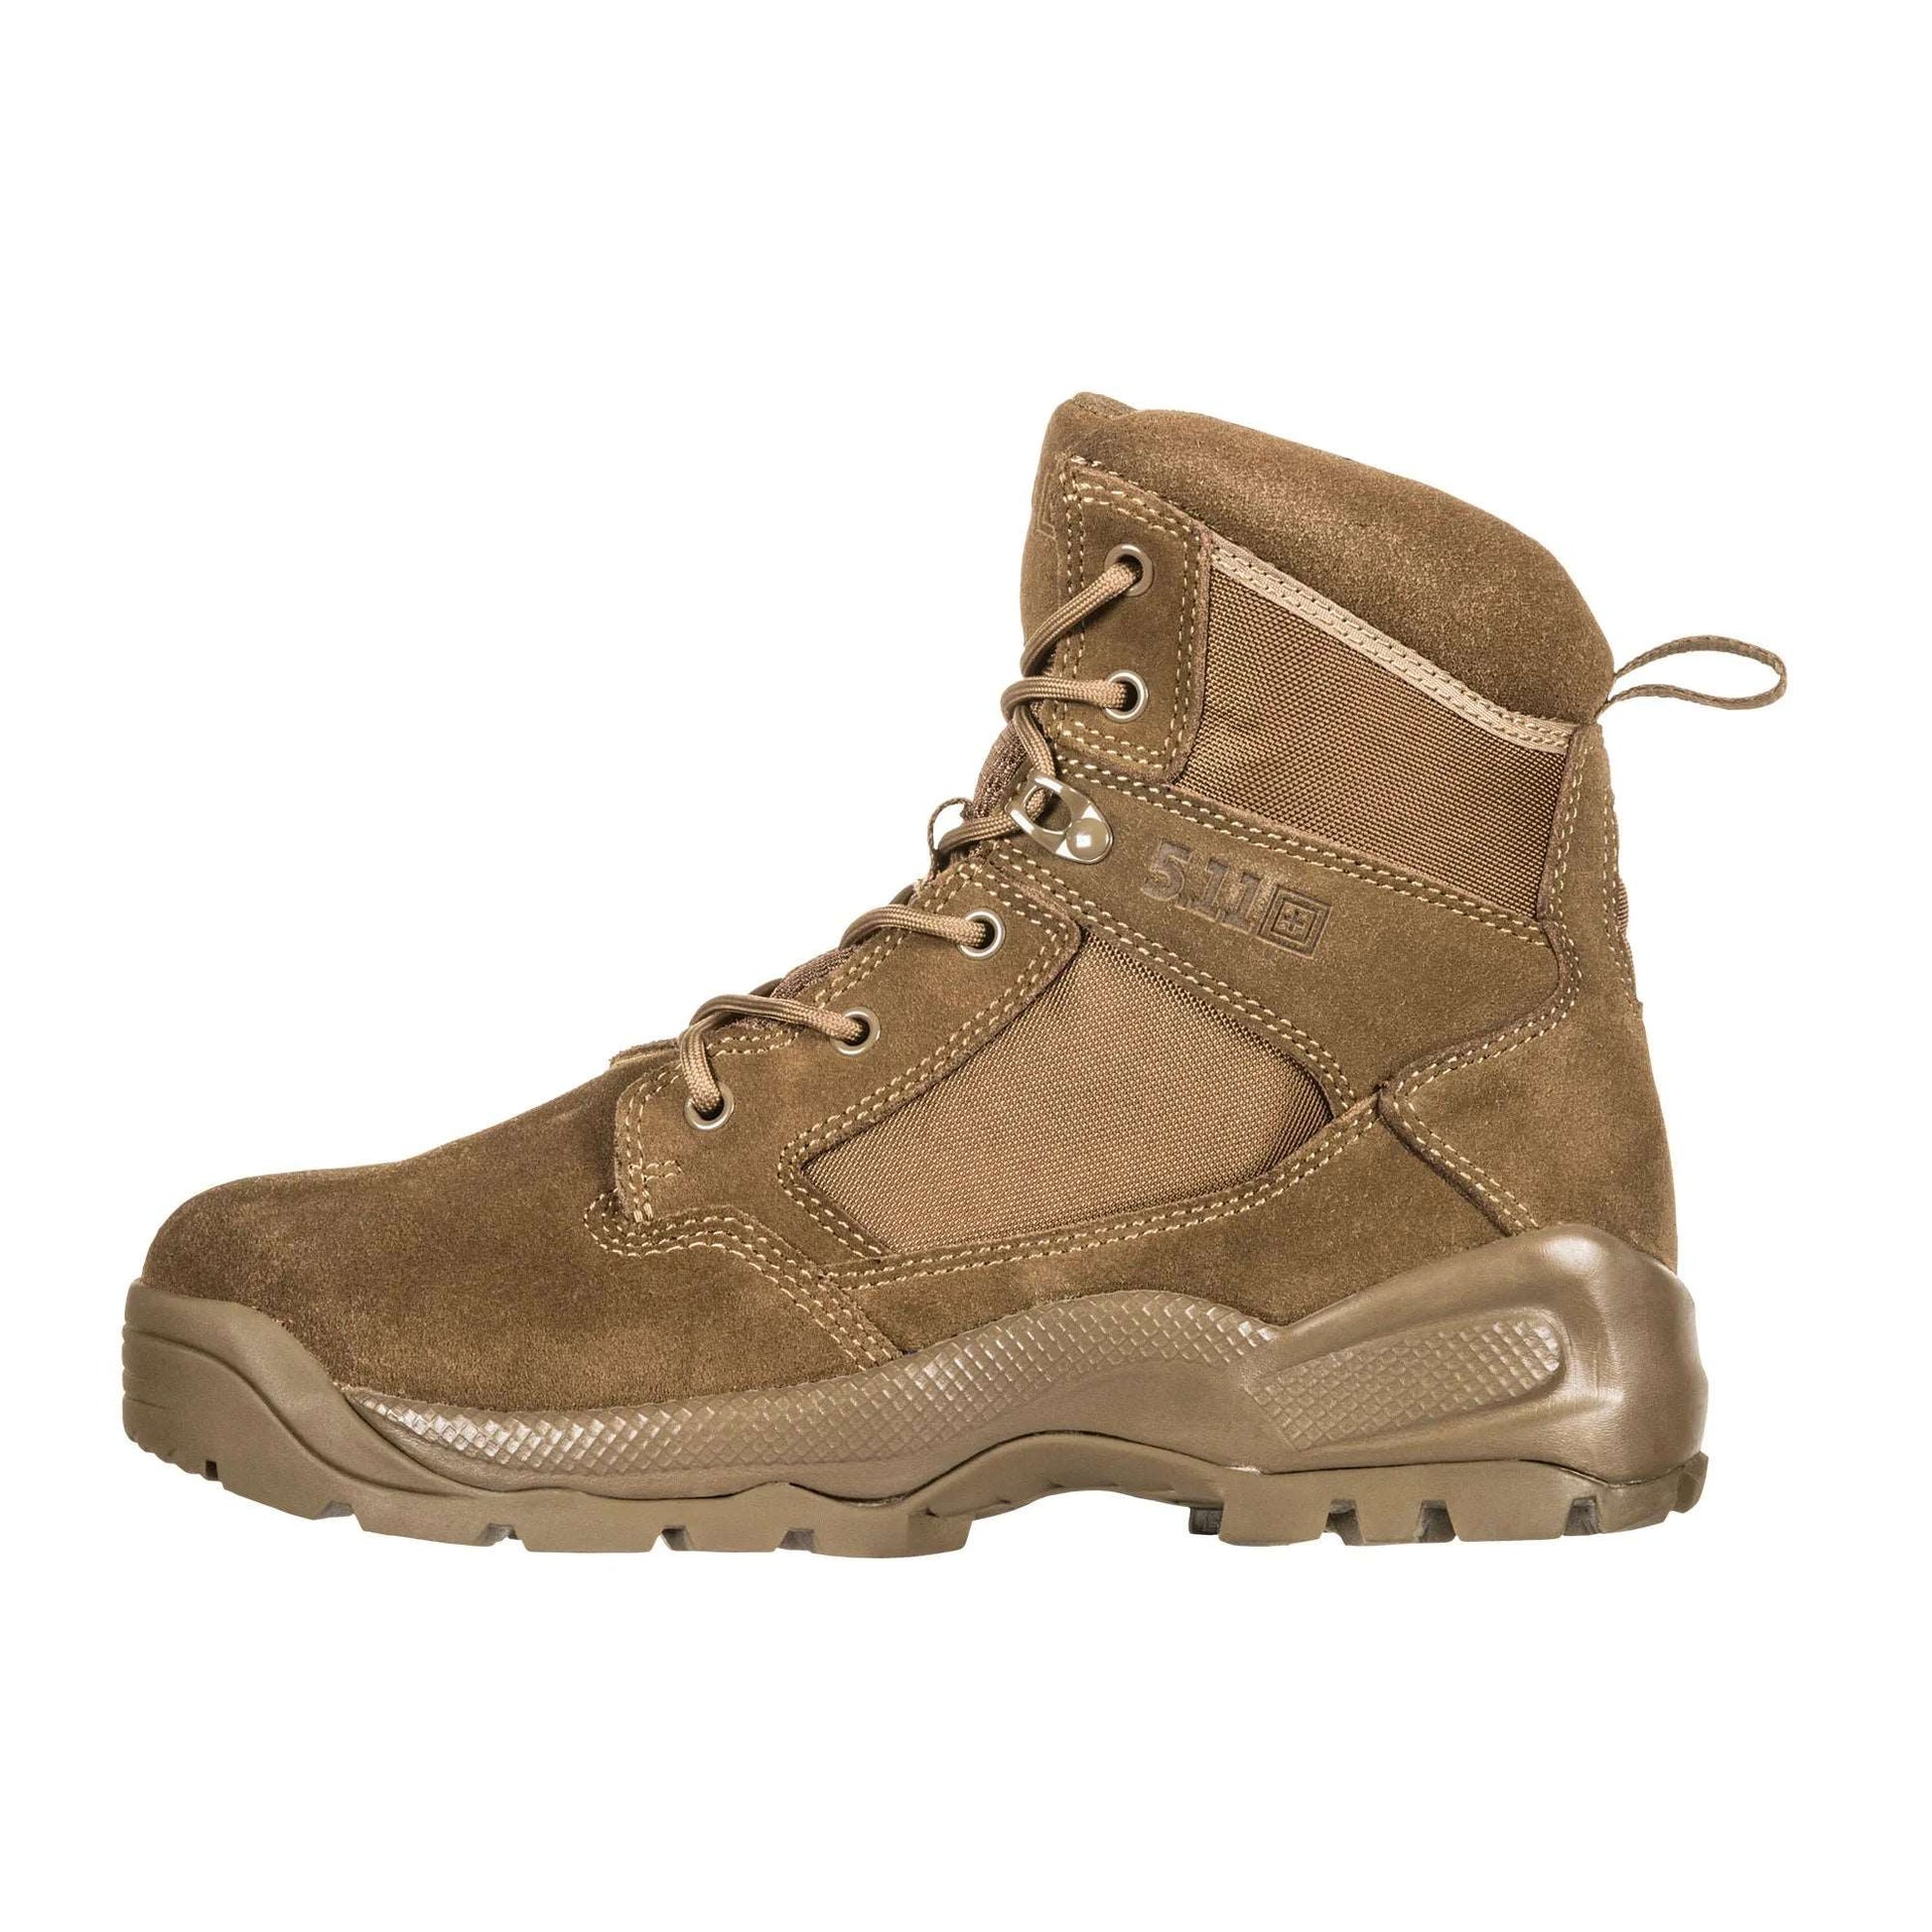 Boots - 5.11 Tactical ATAC 2.0 6" Desert Boot